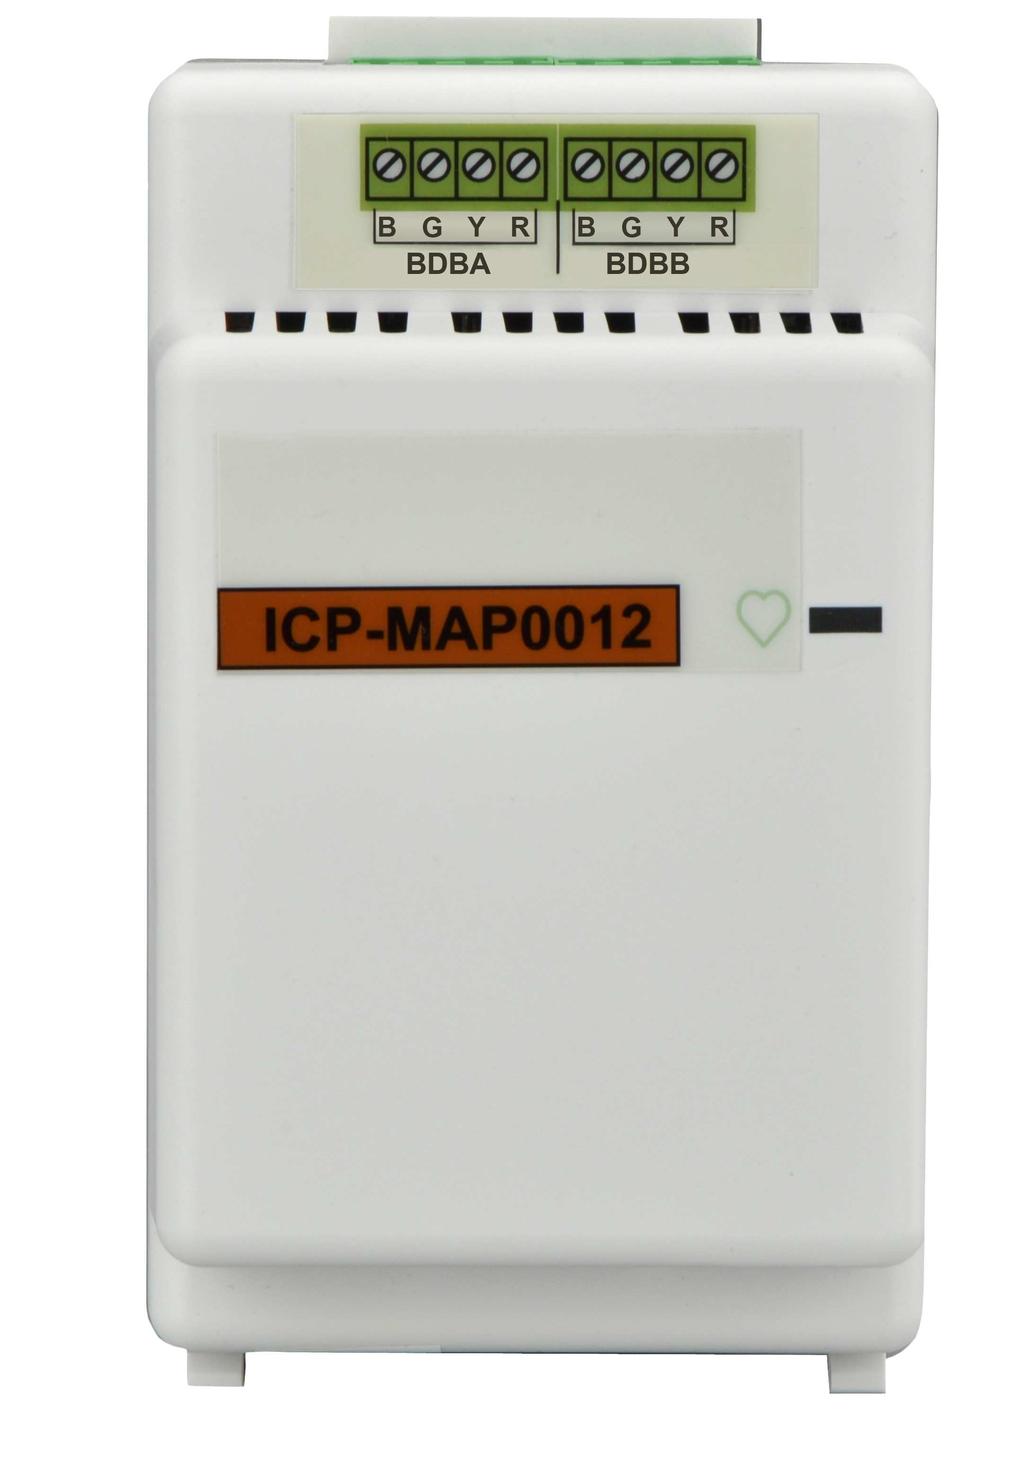 MAP 5000 Połączenia pl 45 Brama LSN (ICP-MAP0010) 1 Rozdzielacz CAN (ICP-MAP0012)) Zasilacz (IPP-MAP0005) Klawiatura (IUI-MAP0001) 2 2 1 W razie obsługi zdalnej jednej lub więcej bram LSN, każda